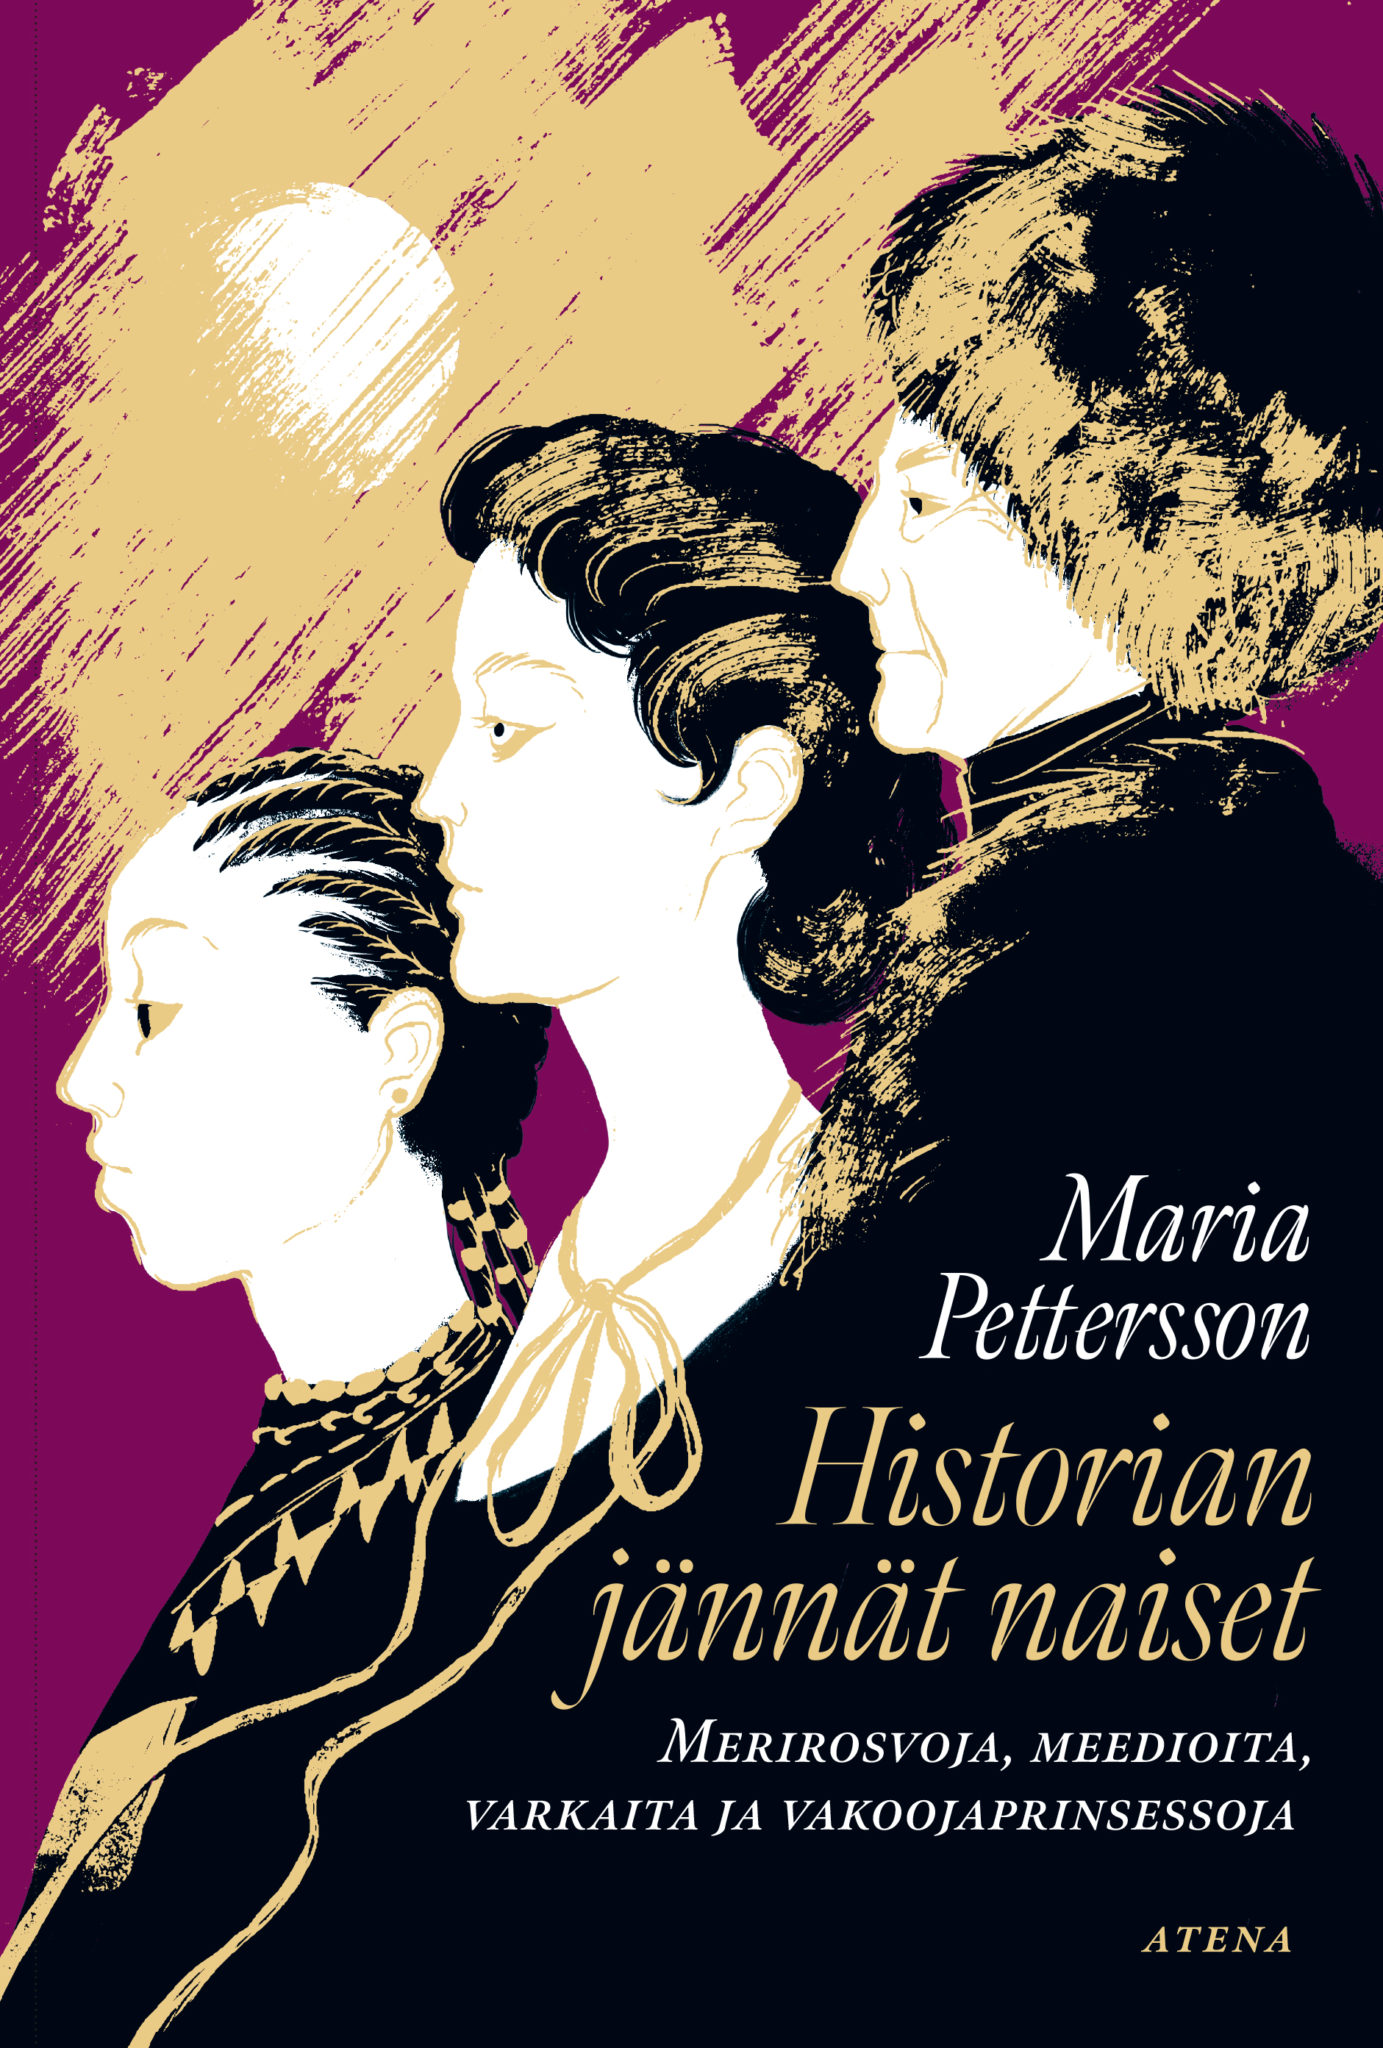 Maria Pettersson: Historian jännät naiset (Hardcover, Finnish language, 2020, Atena)